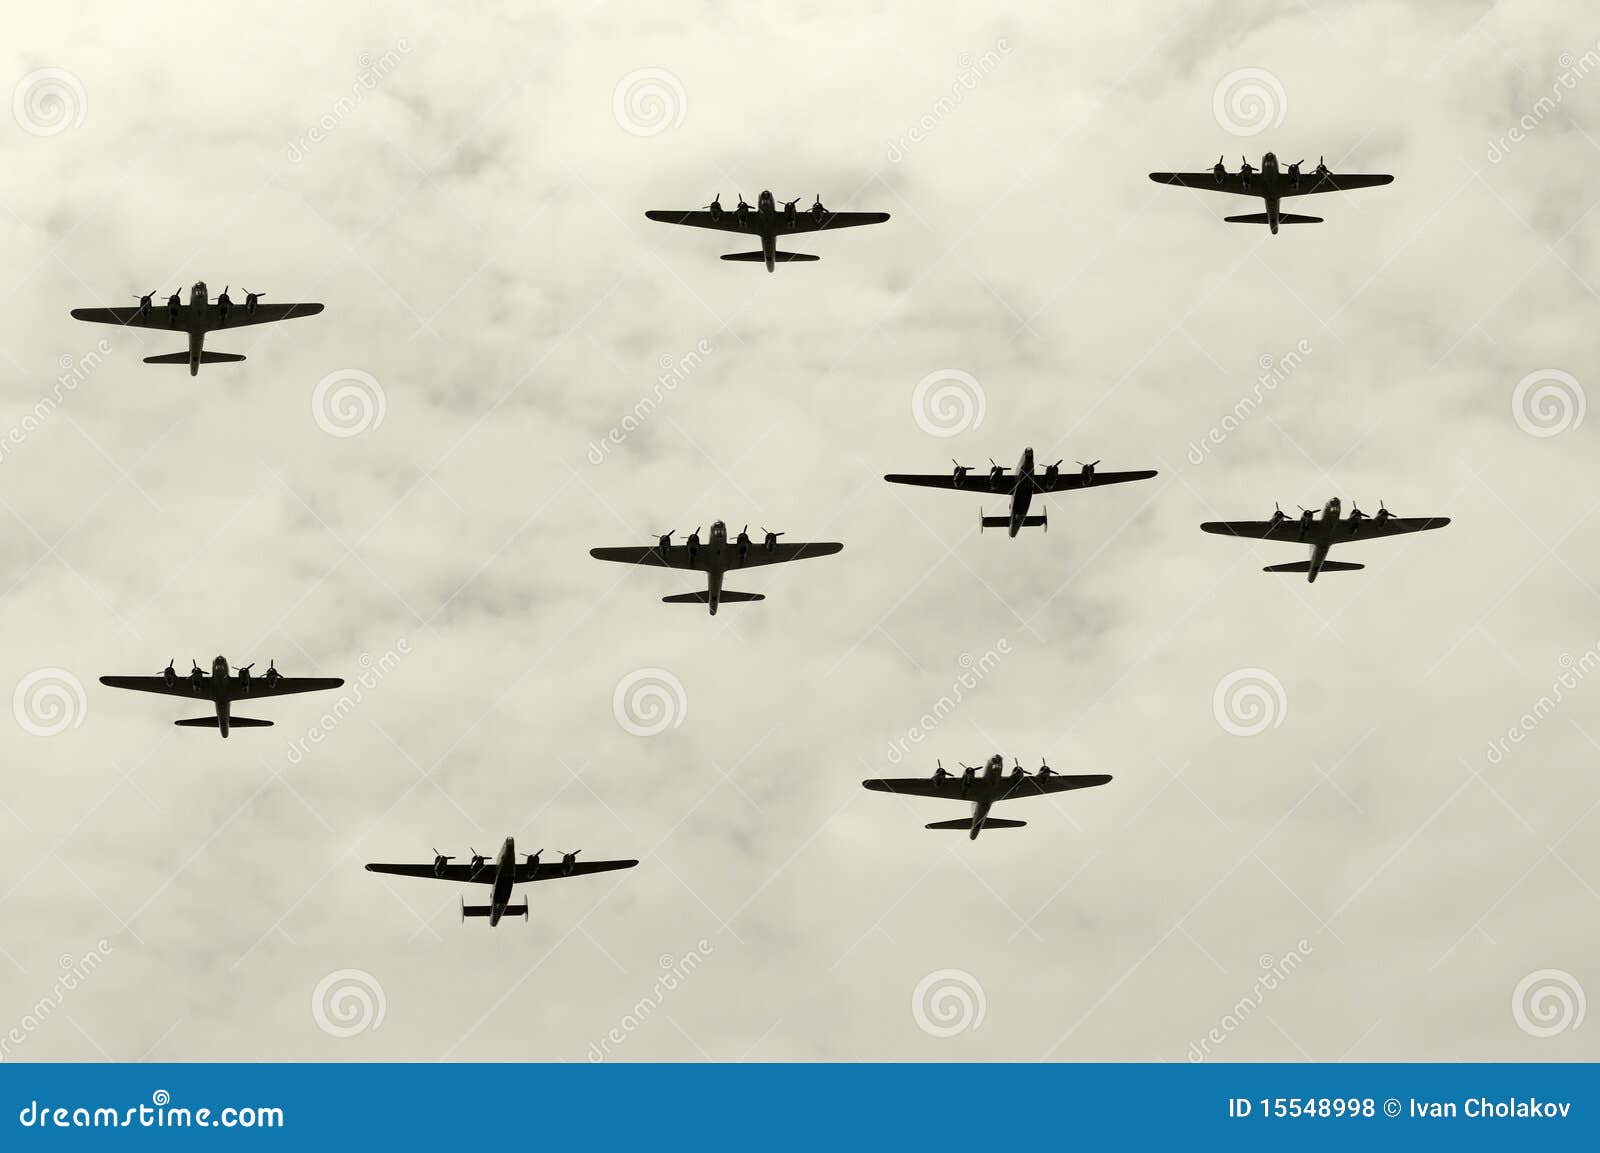 heavy bombers